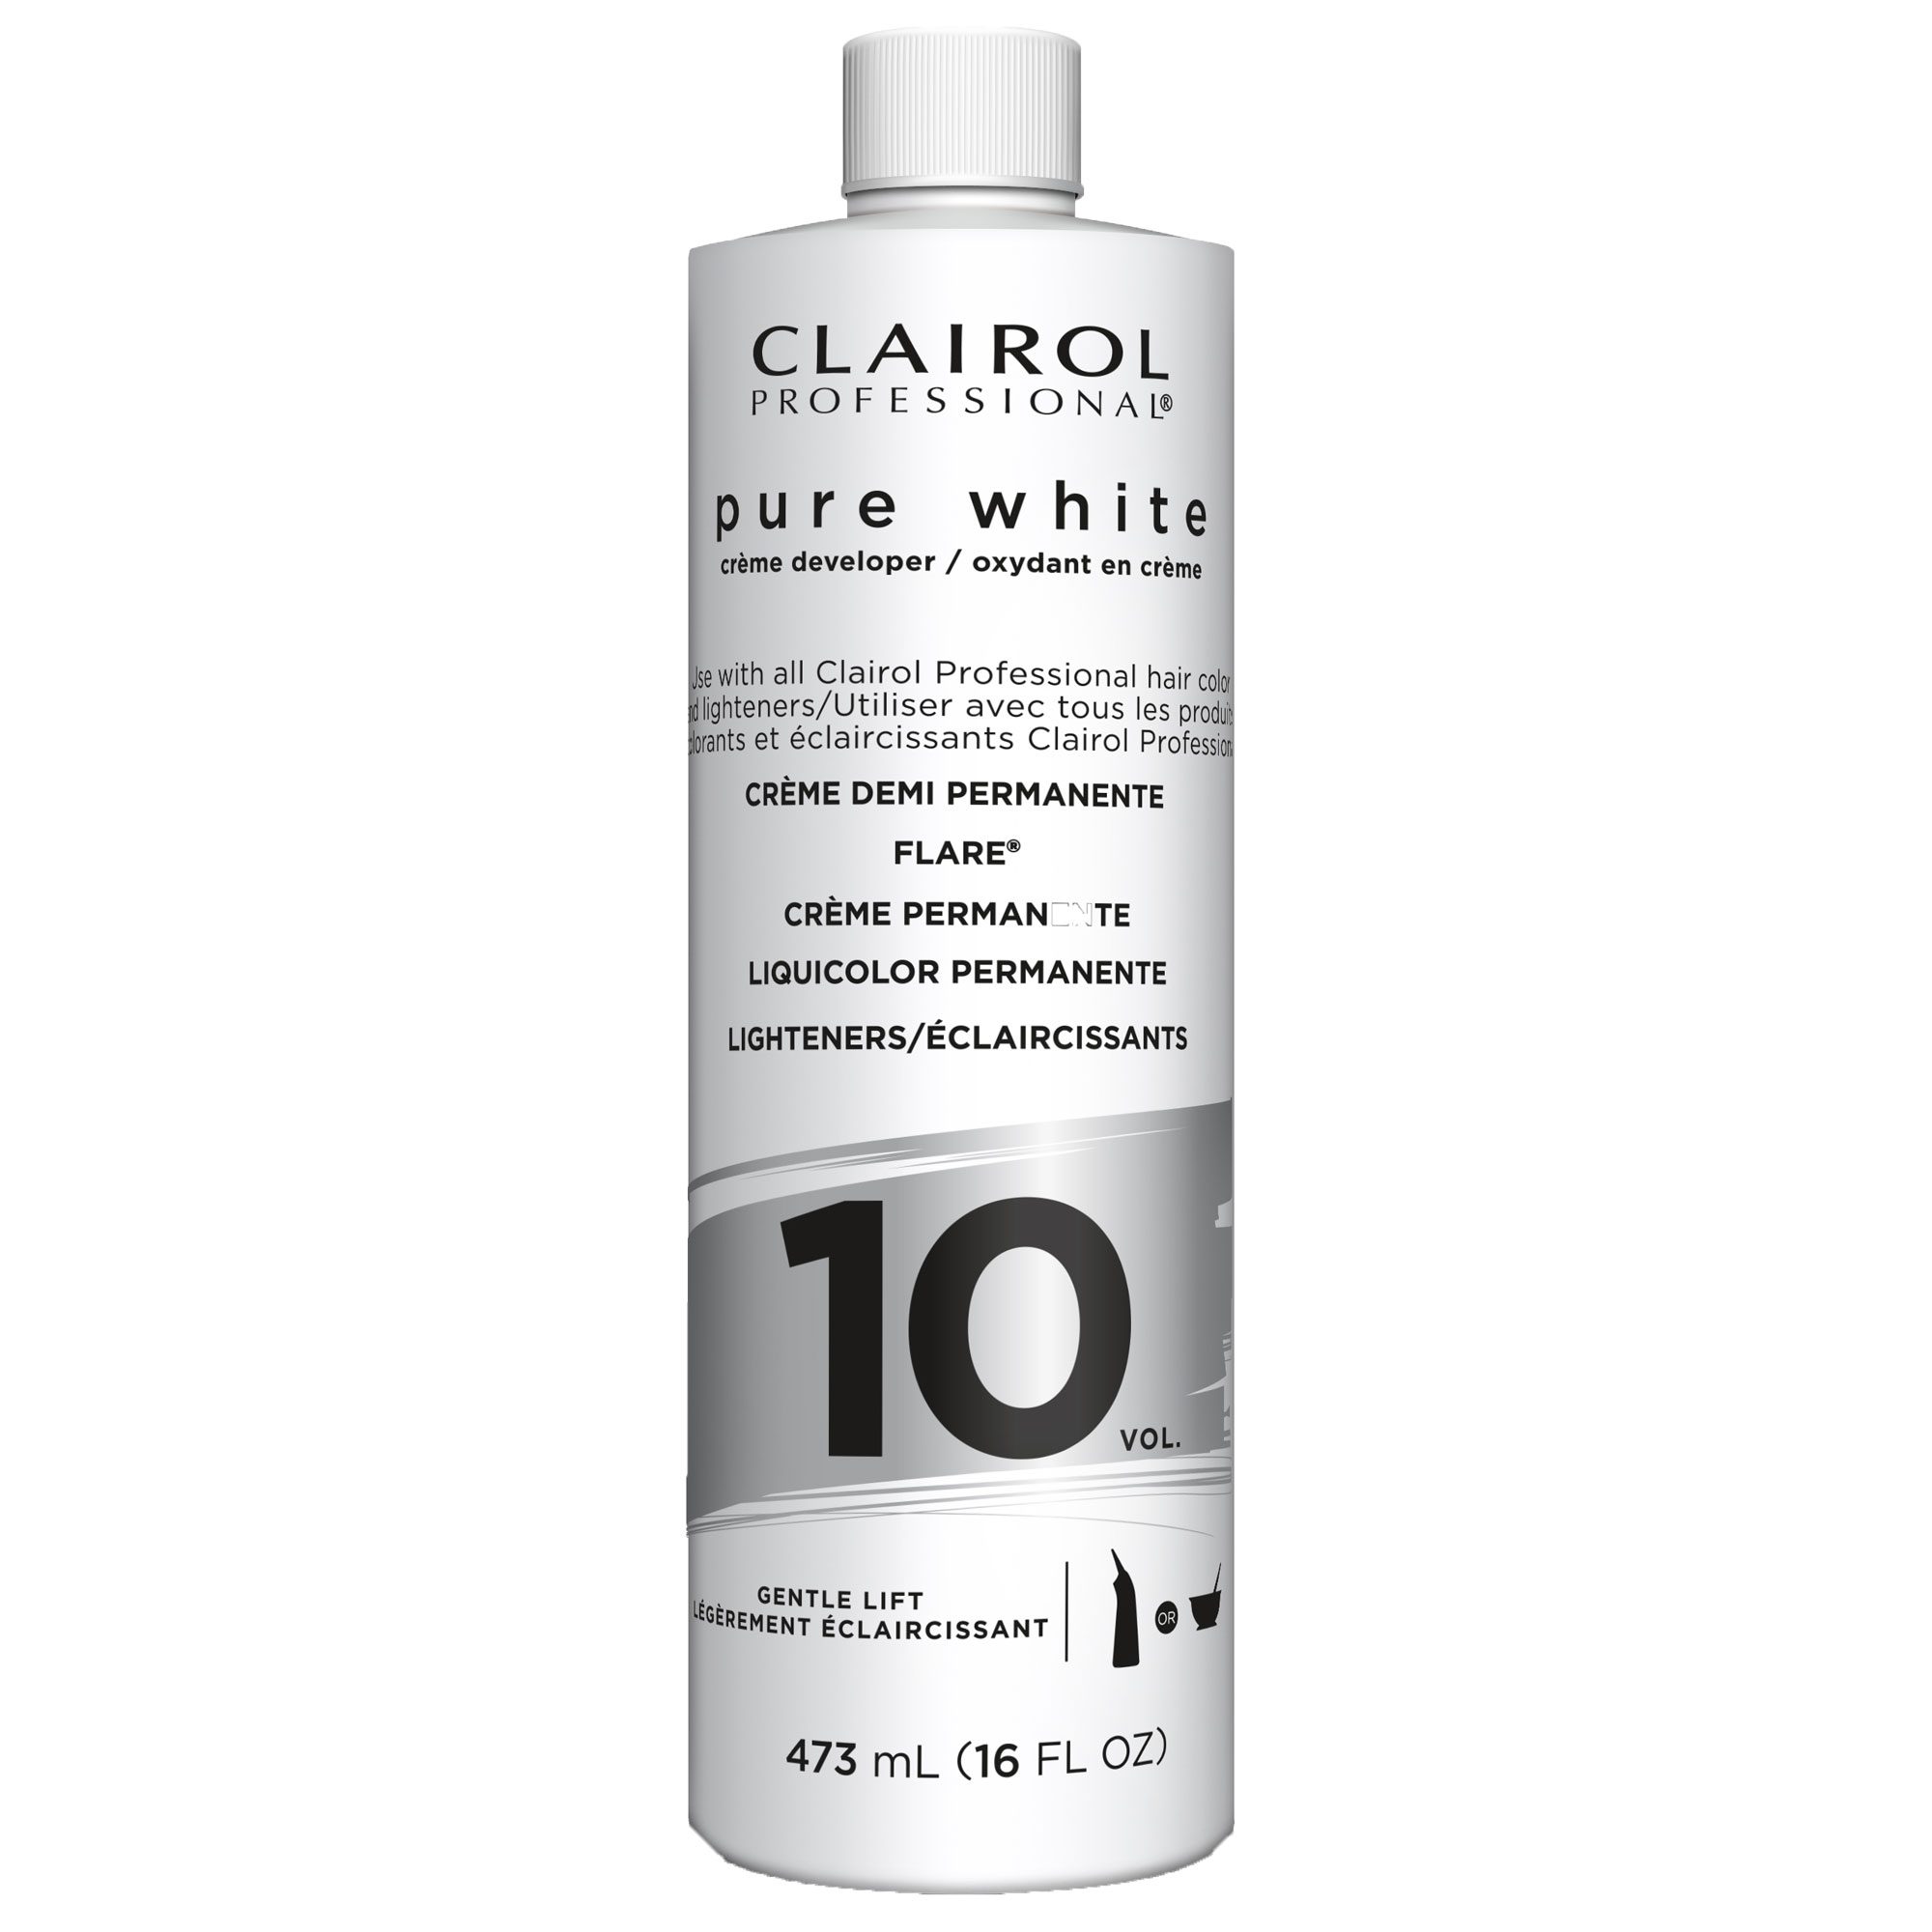 Clairol Pure White 10 Vol Creme Developer